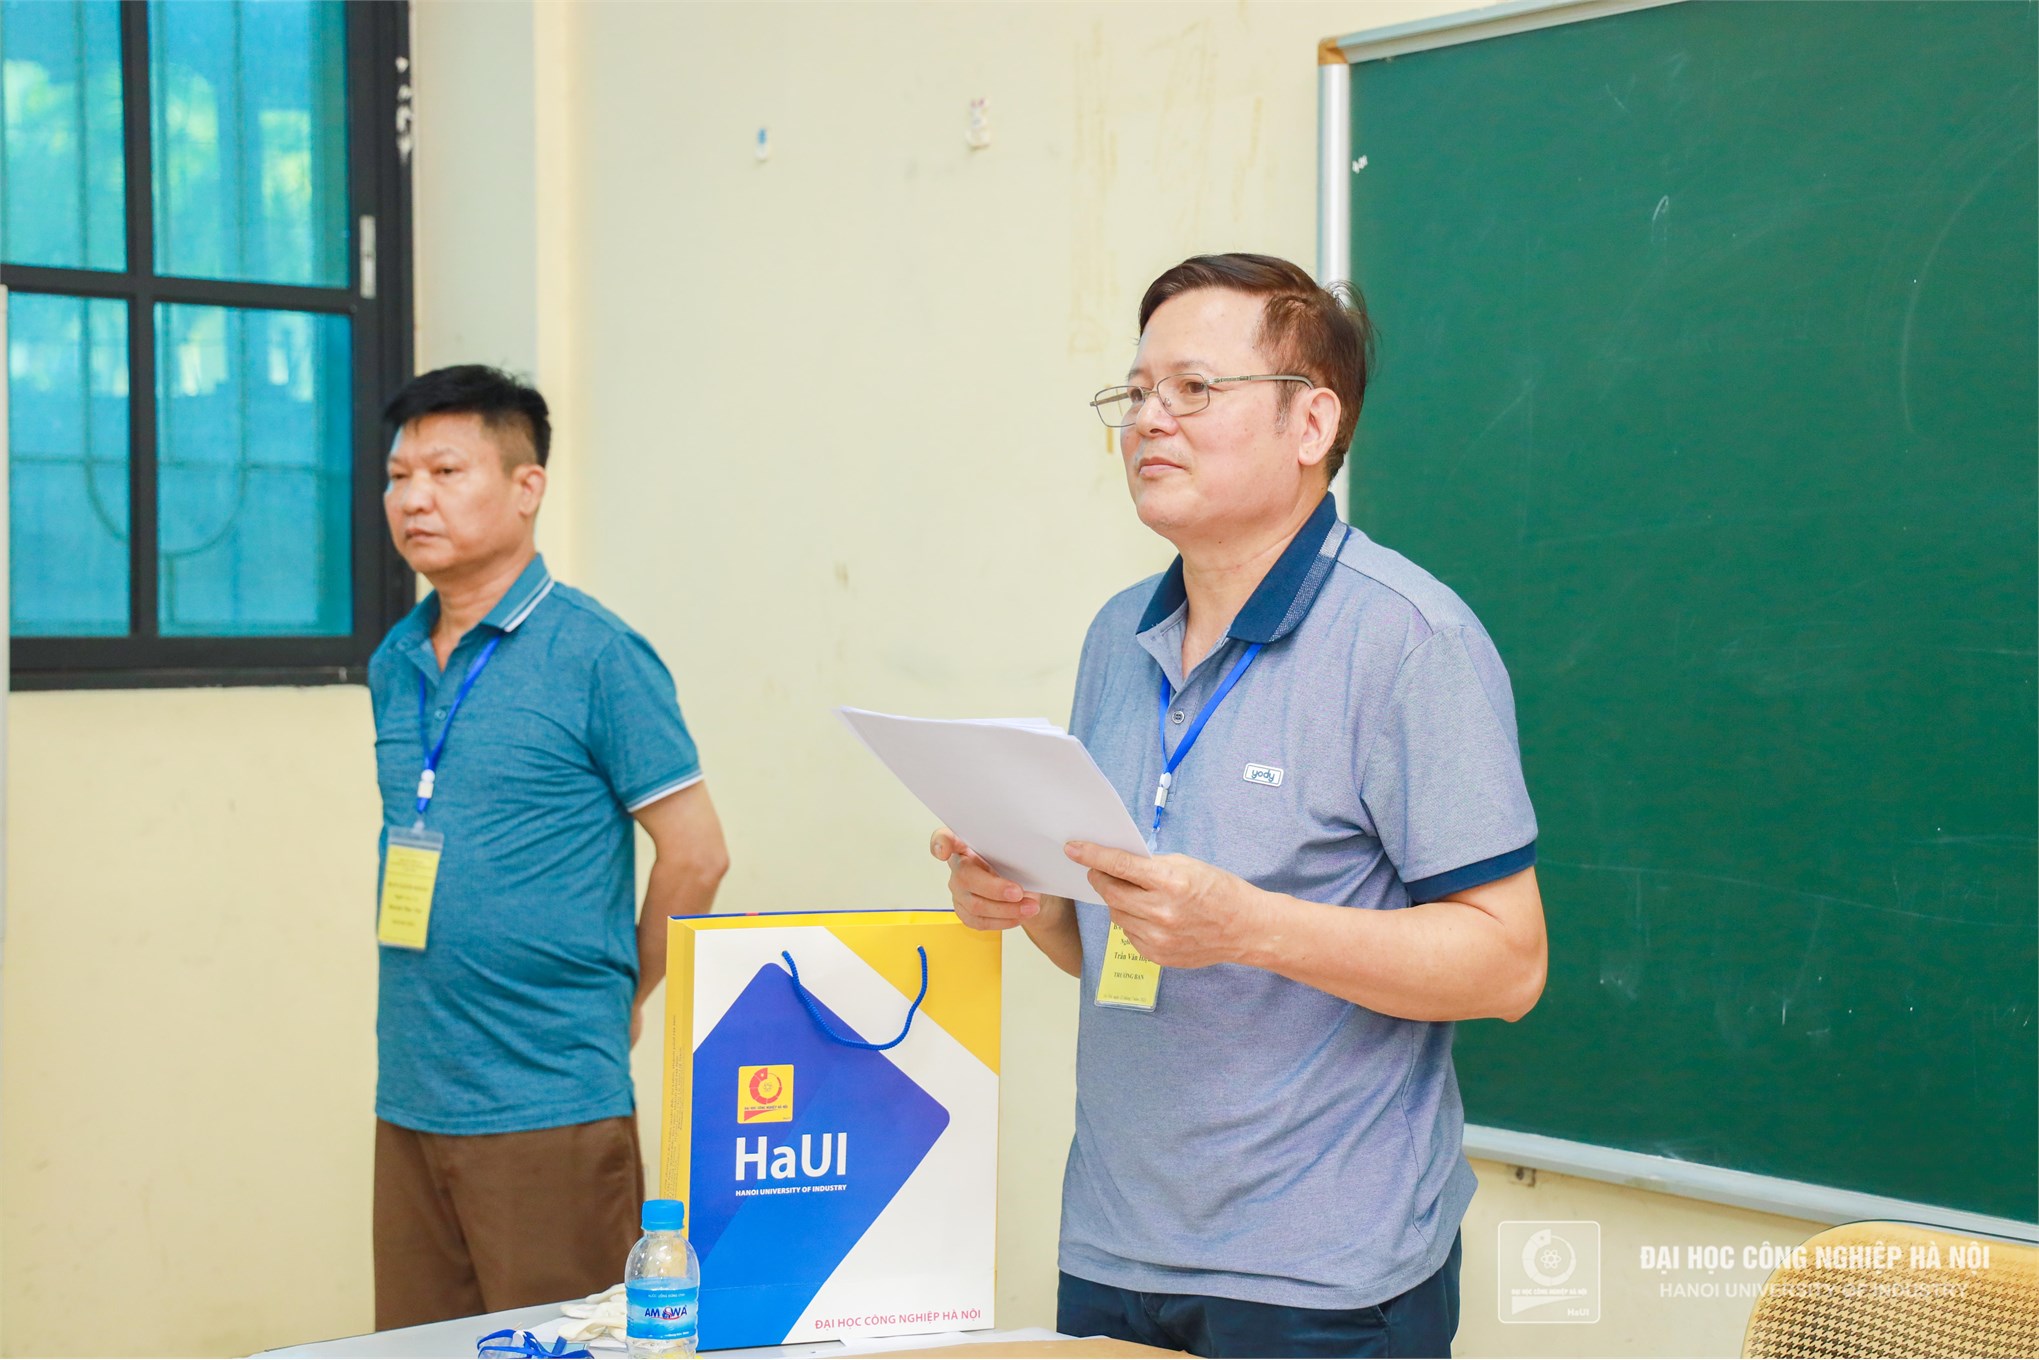 Hội thi thợ giỏi ngành Công thương Hà Nội diễn ra sôi nổi tại Trường Đại học Công nghiệp Hà Nội